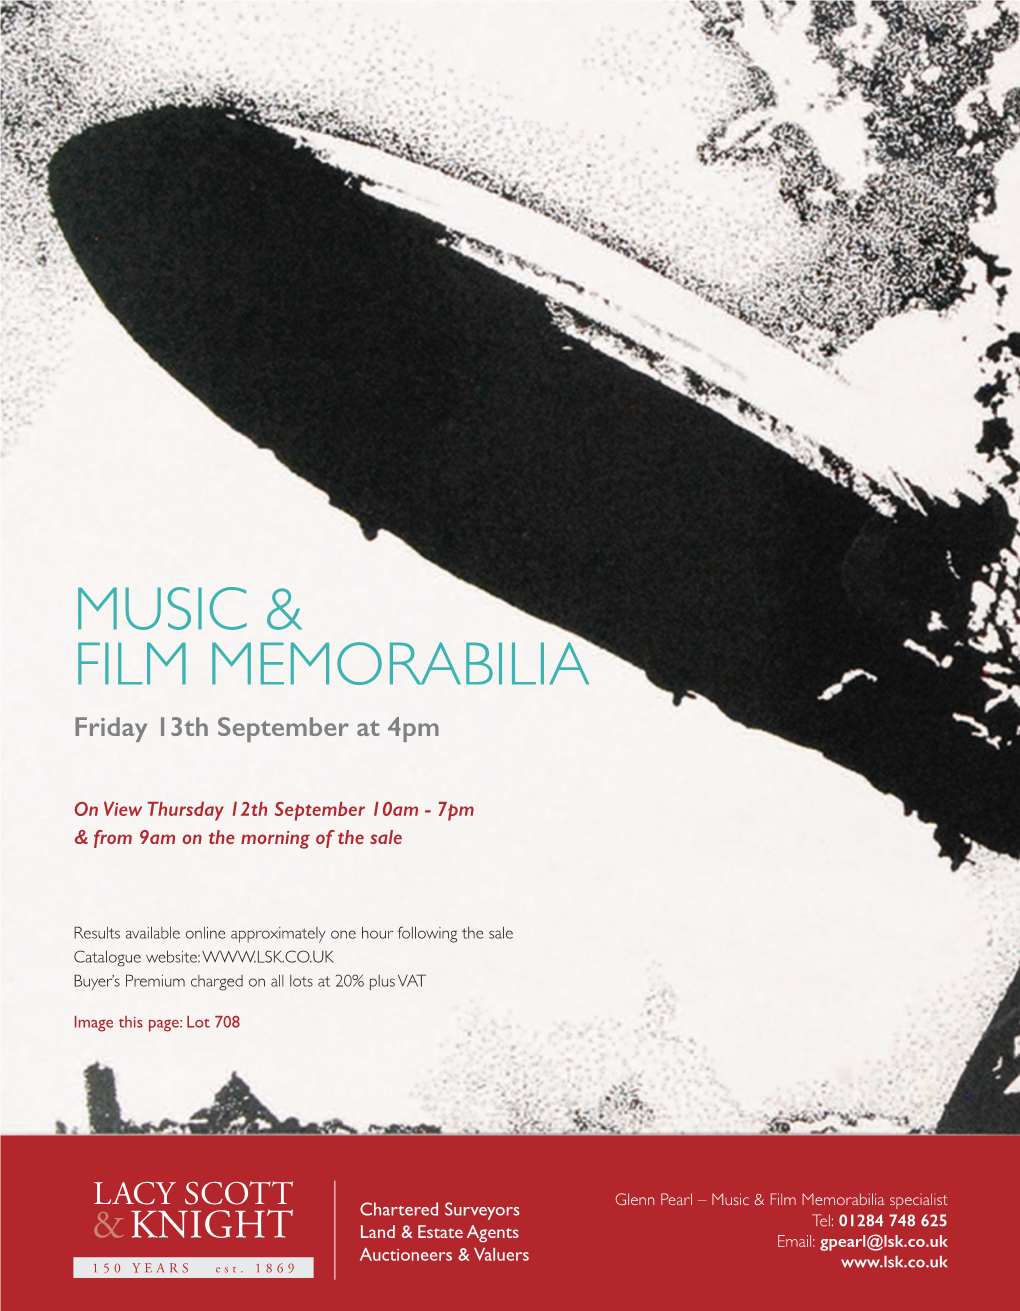 Music & Film Memorabilia